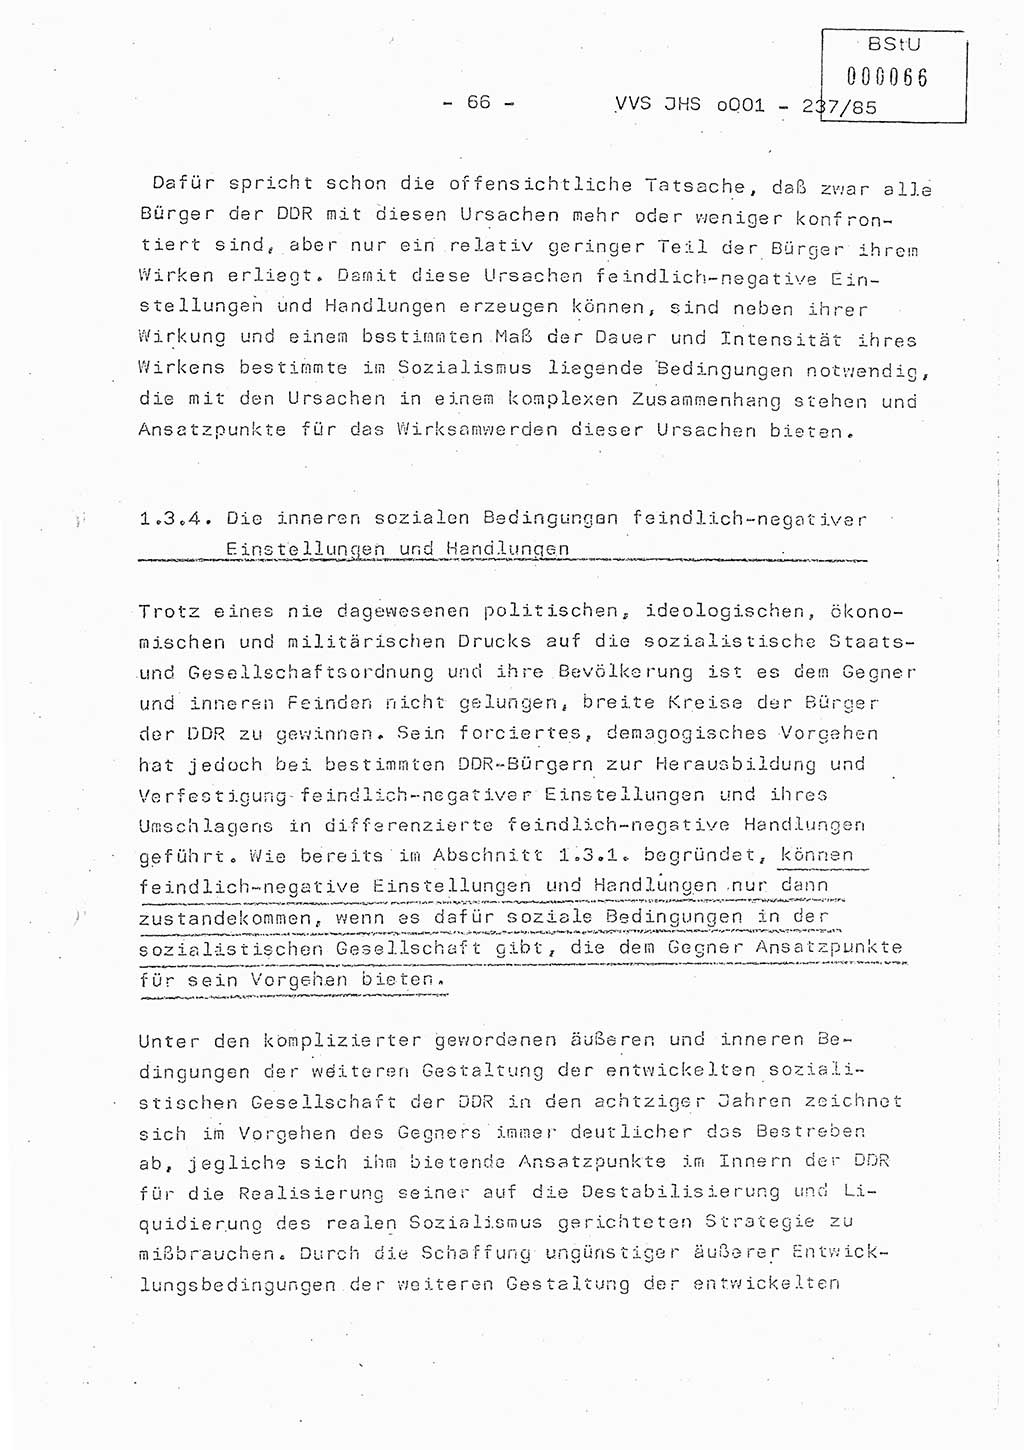 Dissertation Oberstleutnant Peter Jakulski (JHS), Oberstleutnat Christian Rudolph (HA Ⅸ), Major Horst Böttger (ZMD), Major Wolfgang Grüneberg (JHS), Major Albert Meutsch (JHS), Ministerium für Staatssicherheit (MfS) [Deutsche Demokratische Republik (DDR)], Juristische Hochschule (JHS), Vertrauliche Verschlußsache (VVS) o001-237/85, Potsdam 1985, Seite 66 (Diss. MfS DDR JHS VVS o001-237/85 1985, S. 66)